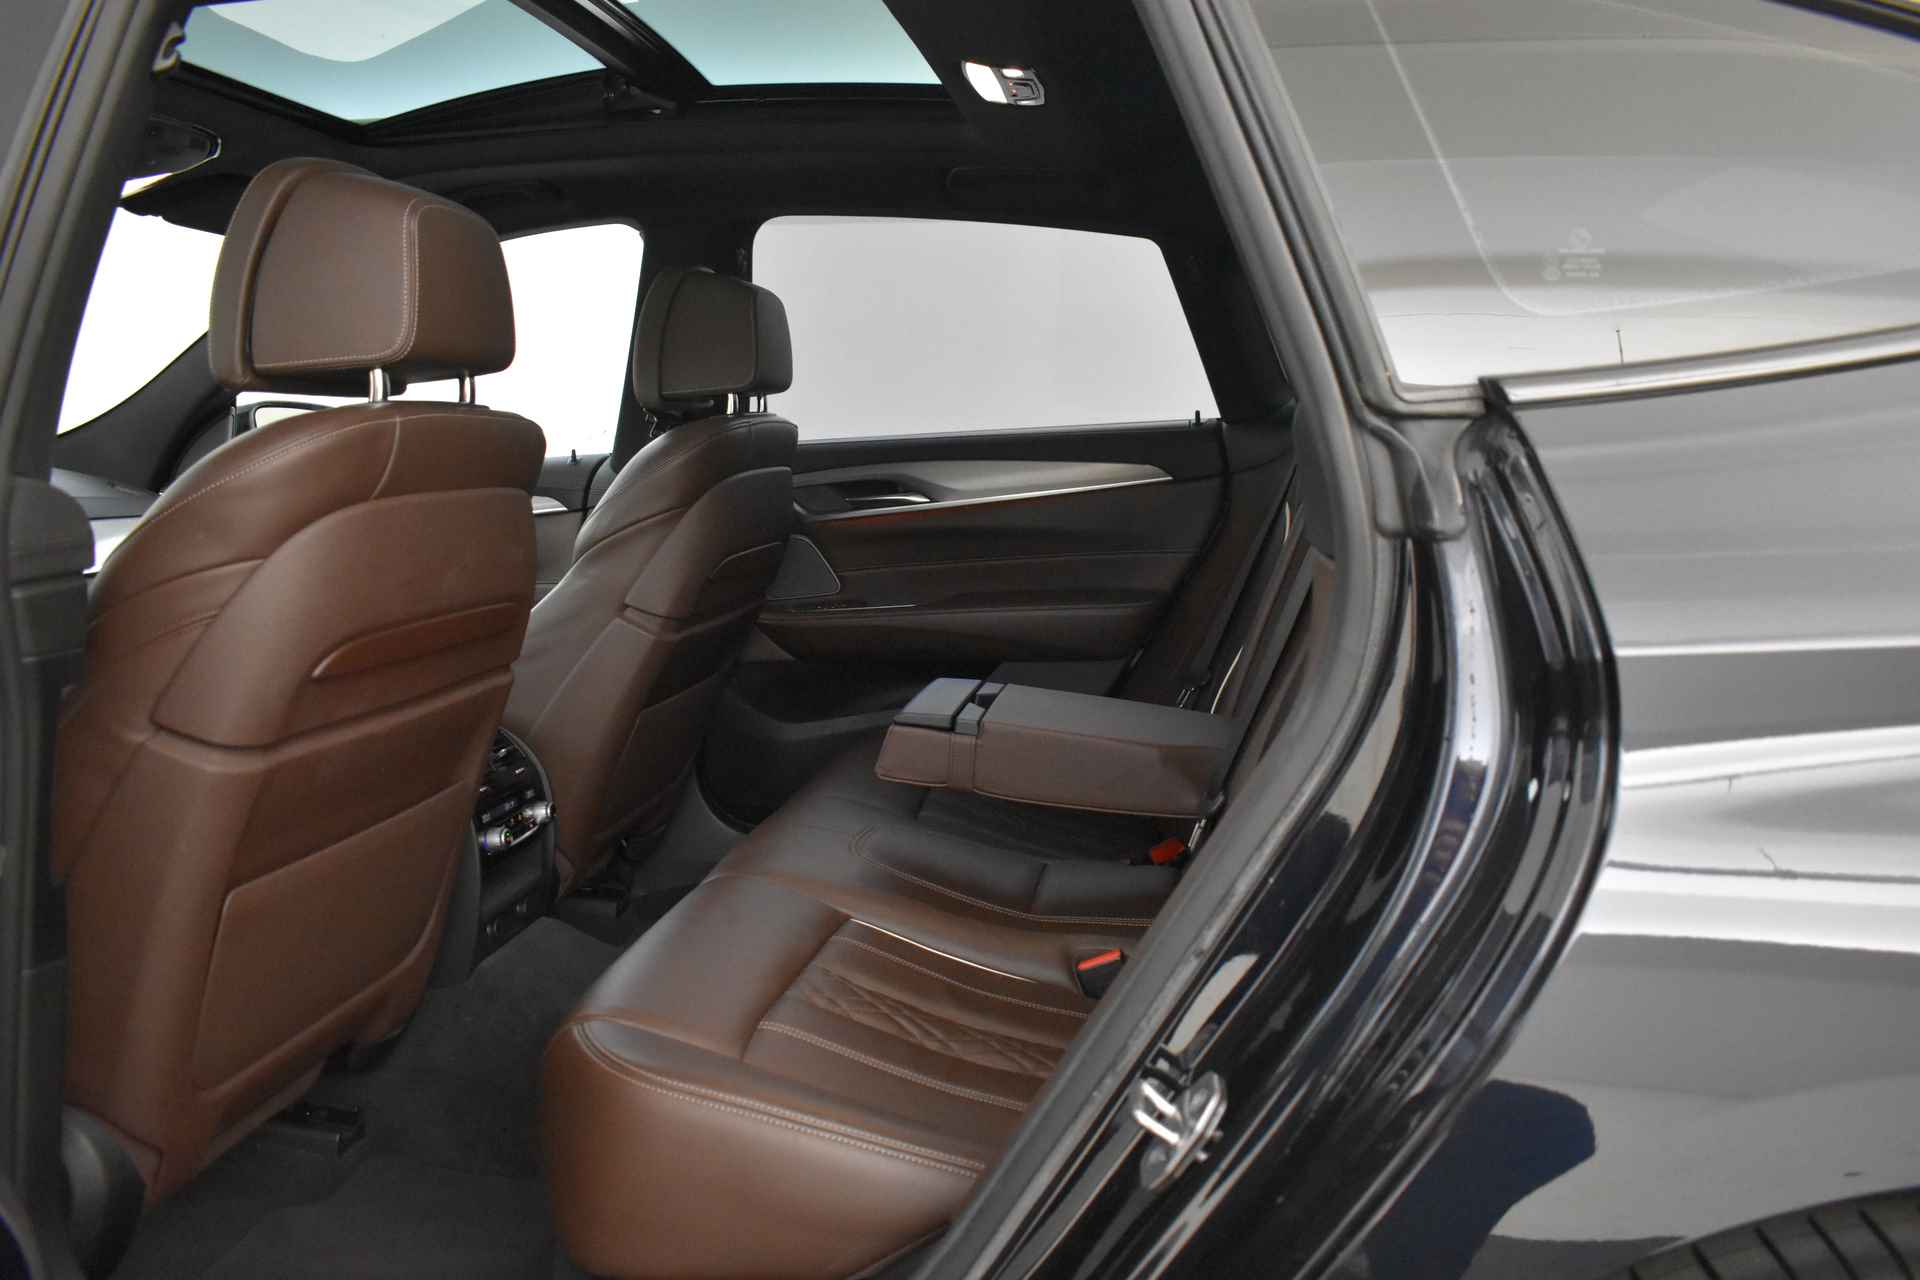 BMW 6 Serie Gran Turismo 640i High Executive M Sport Automaat / Panoramadak / Adaptieve LED / Active Cruise Control / Harman Kardon / Navigatie Professional / Comfort Access - 20/58